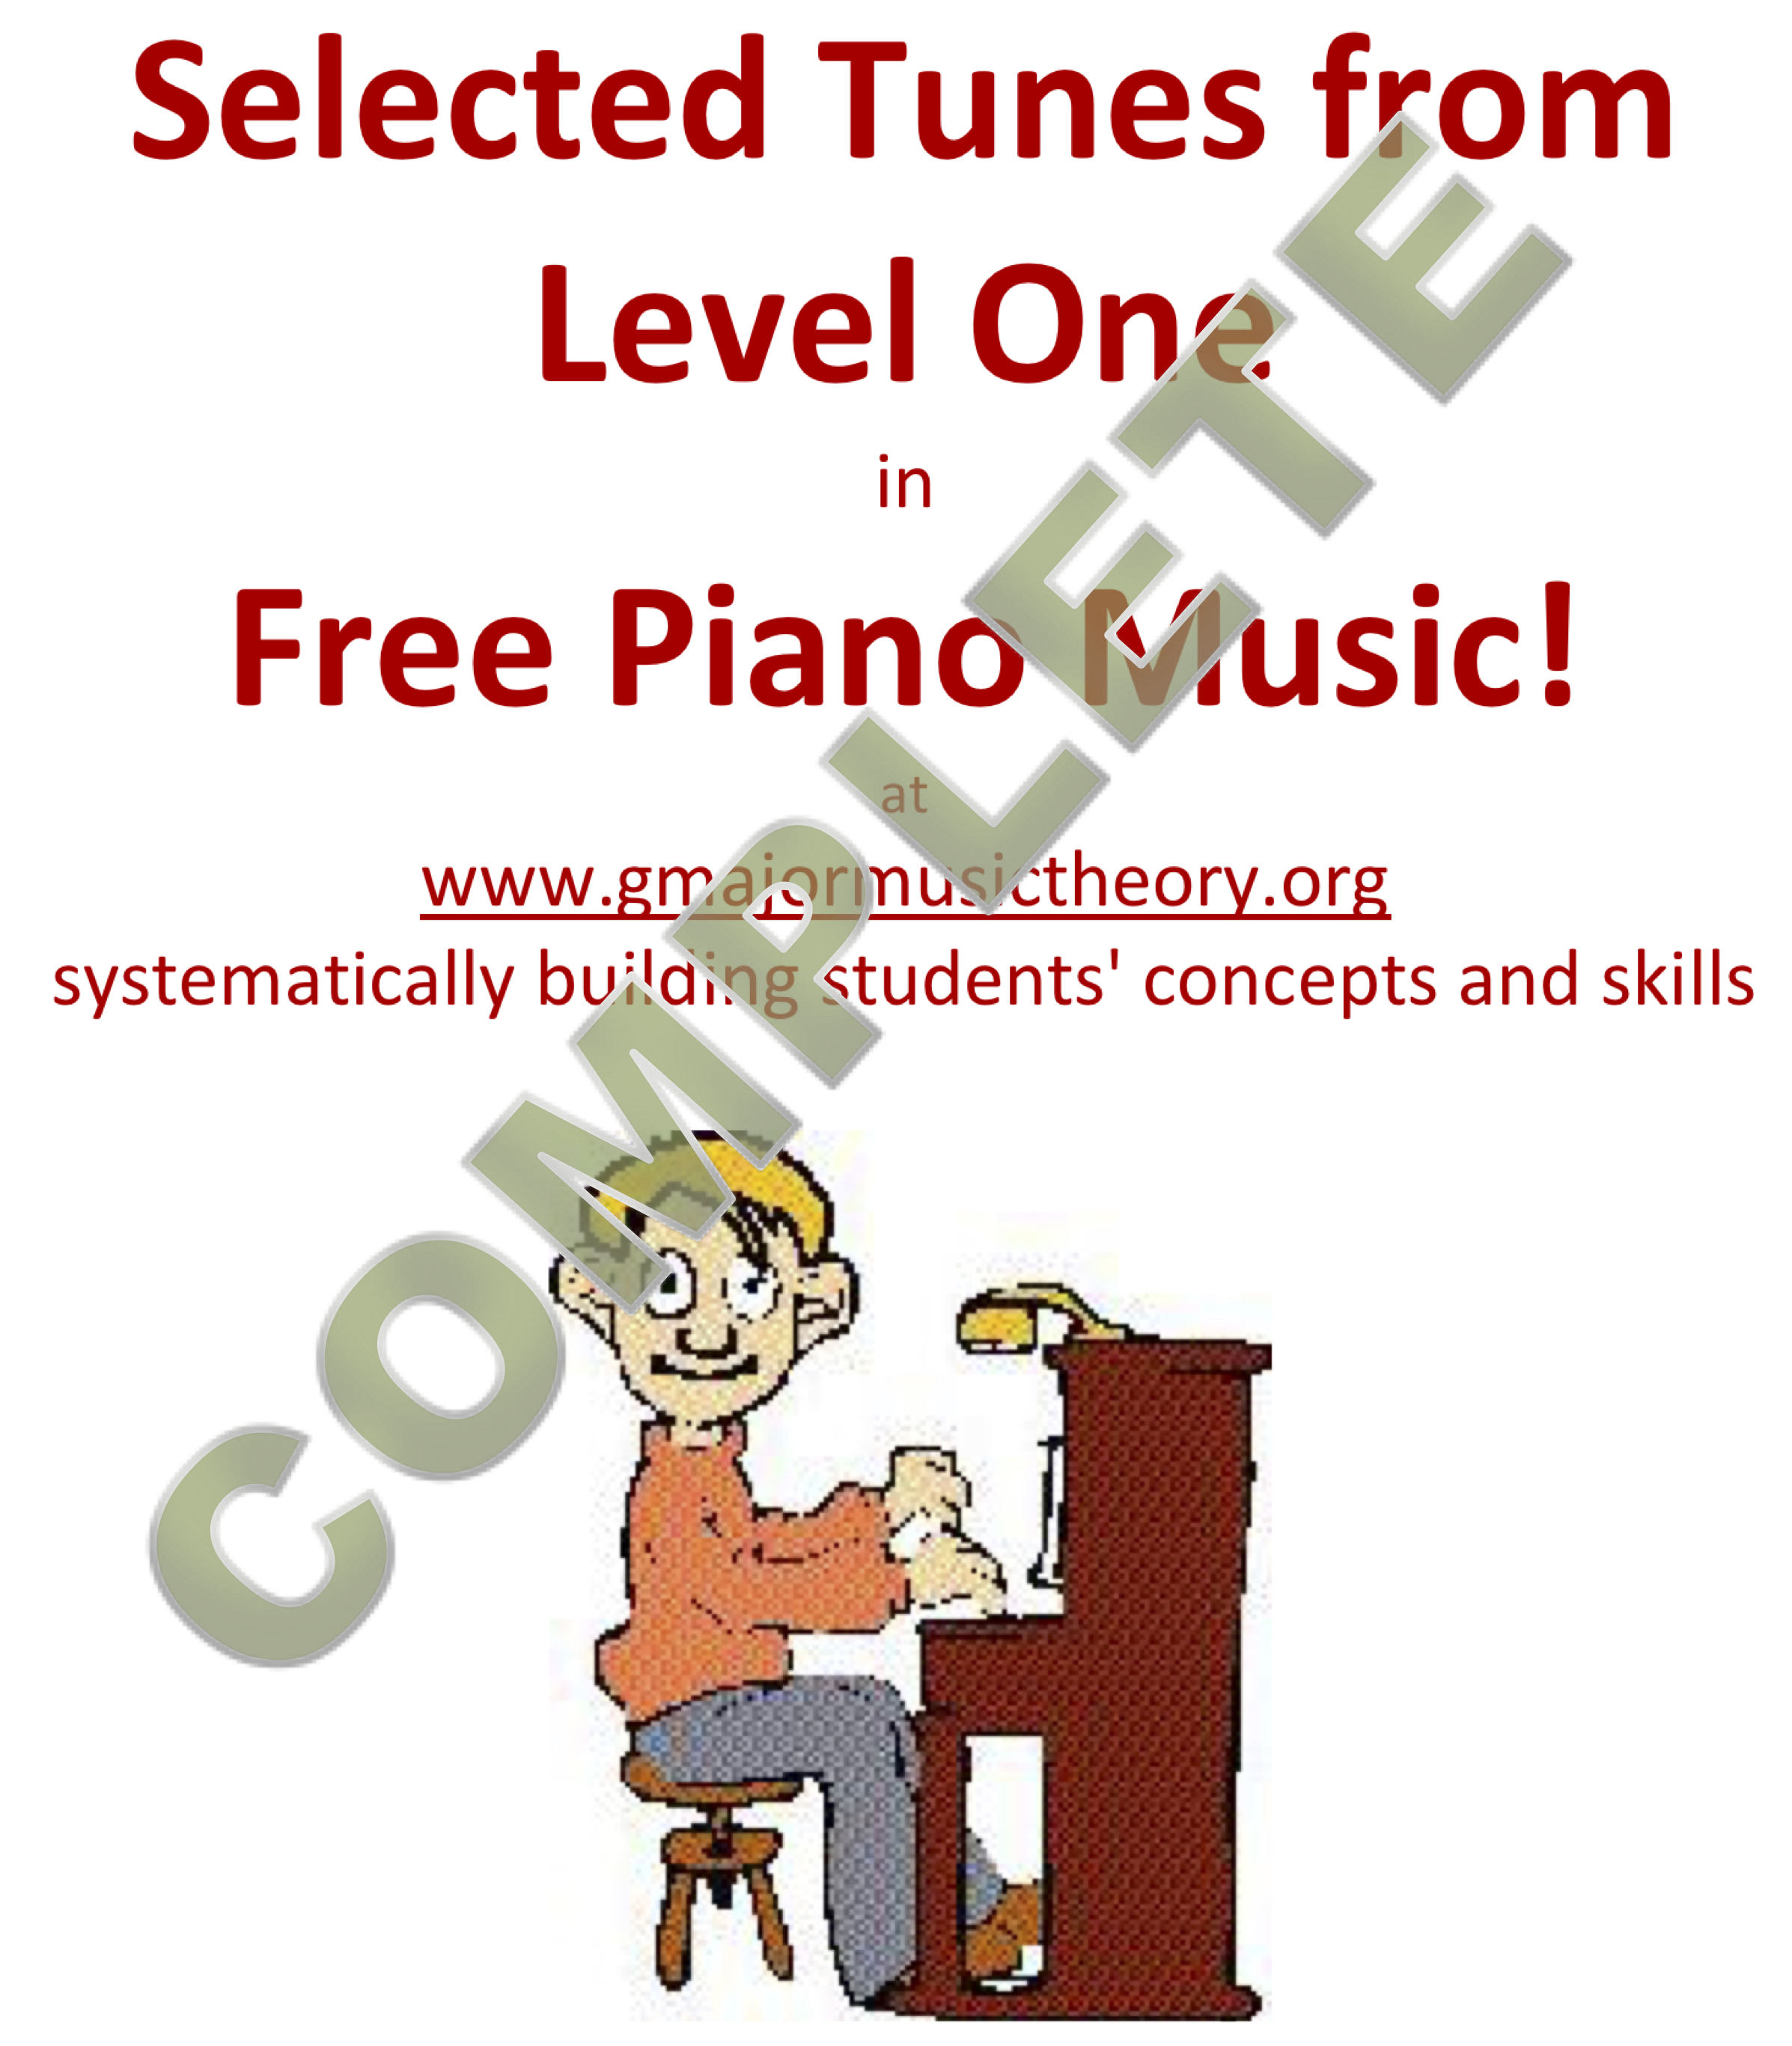 Free Piano Music